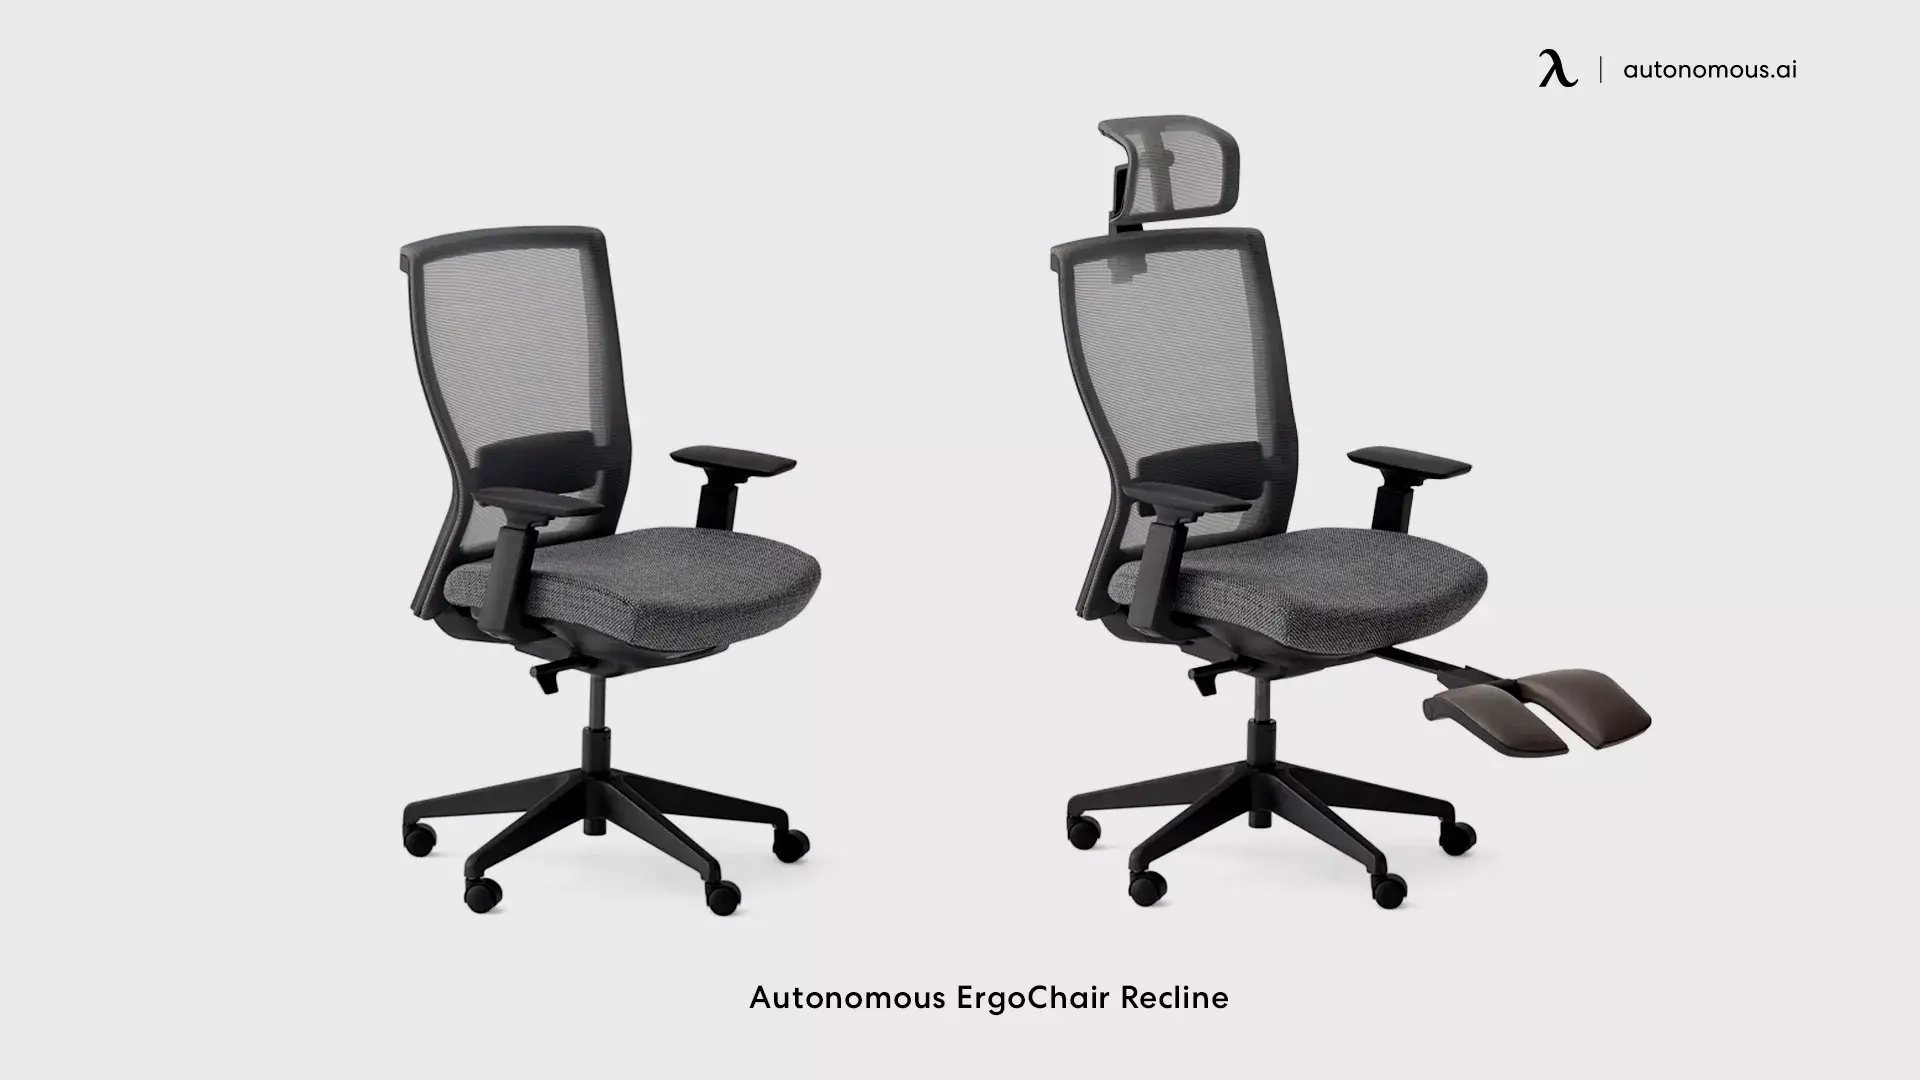 ErgoChair Recline industrial work chair